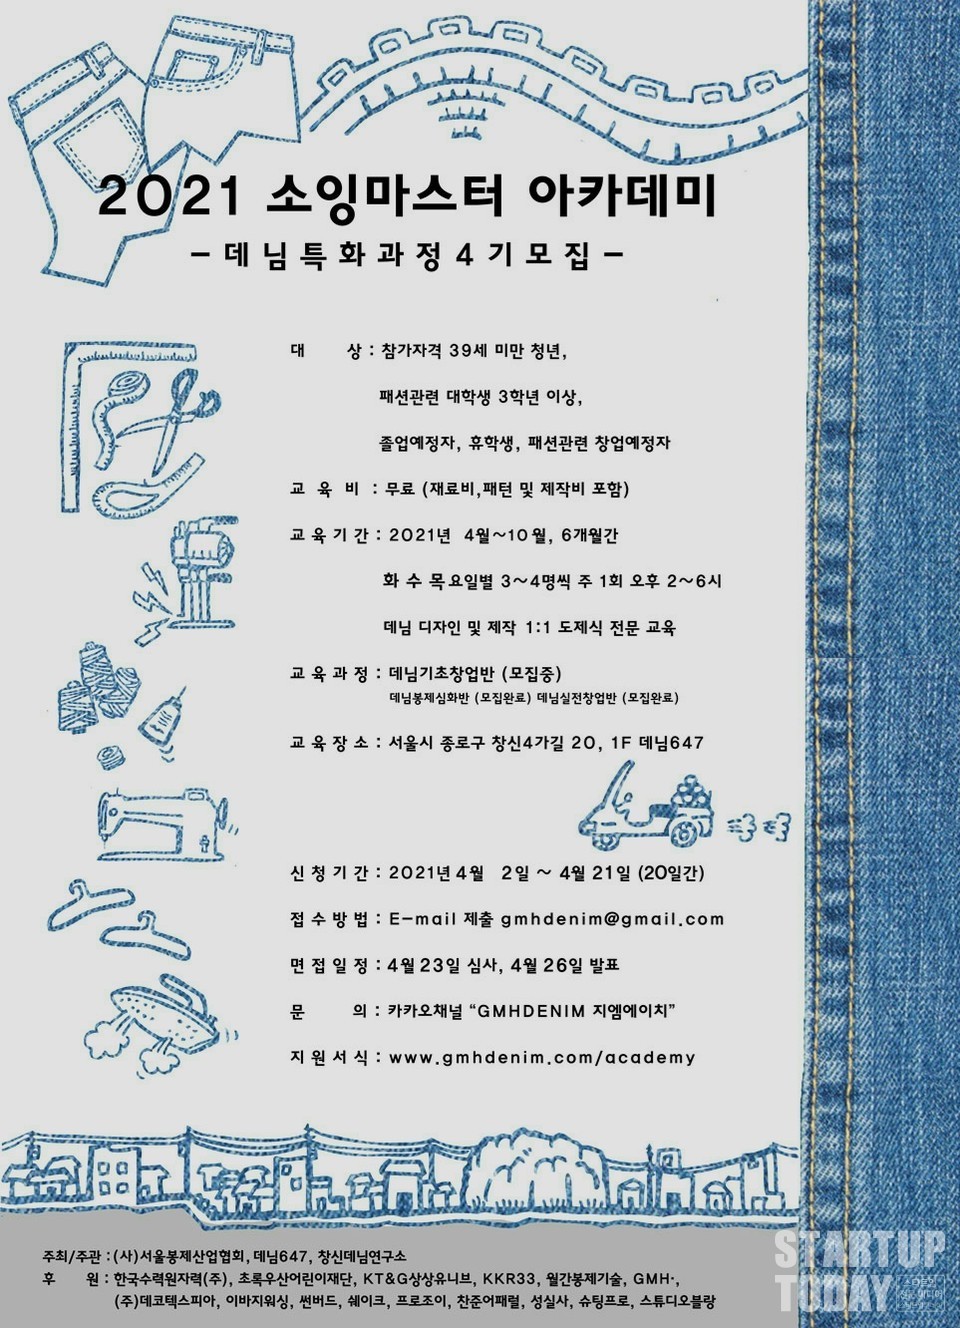 '2021 소잉마스터 아카데미' 데님 특화과정4기 모집 포스터.